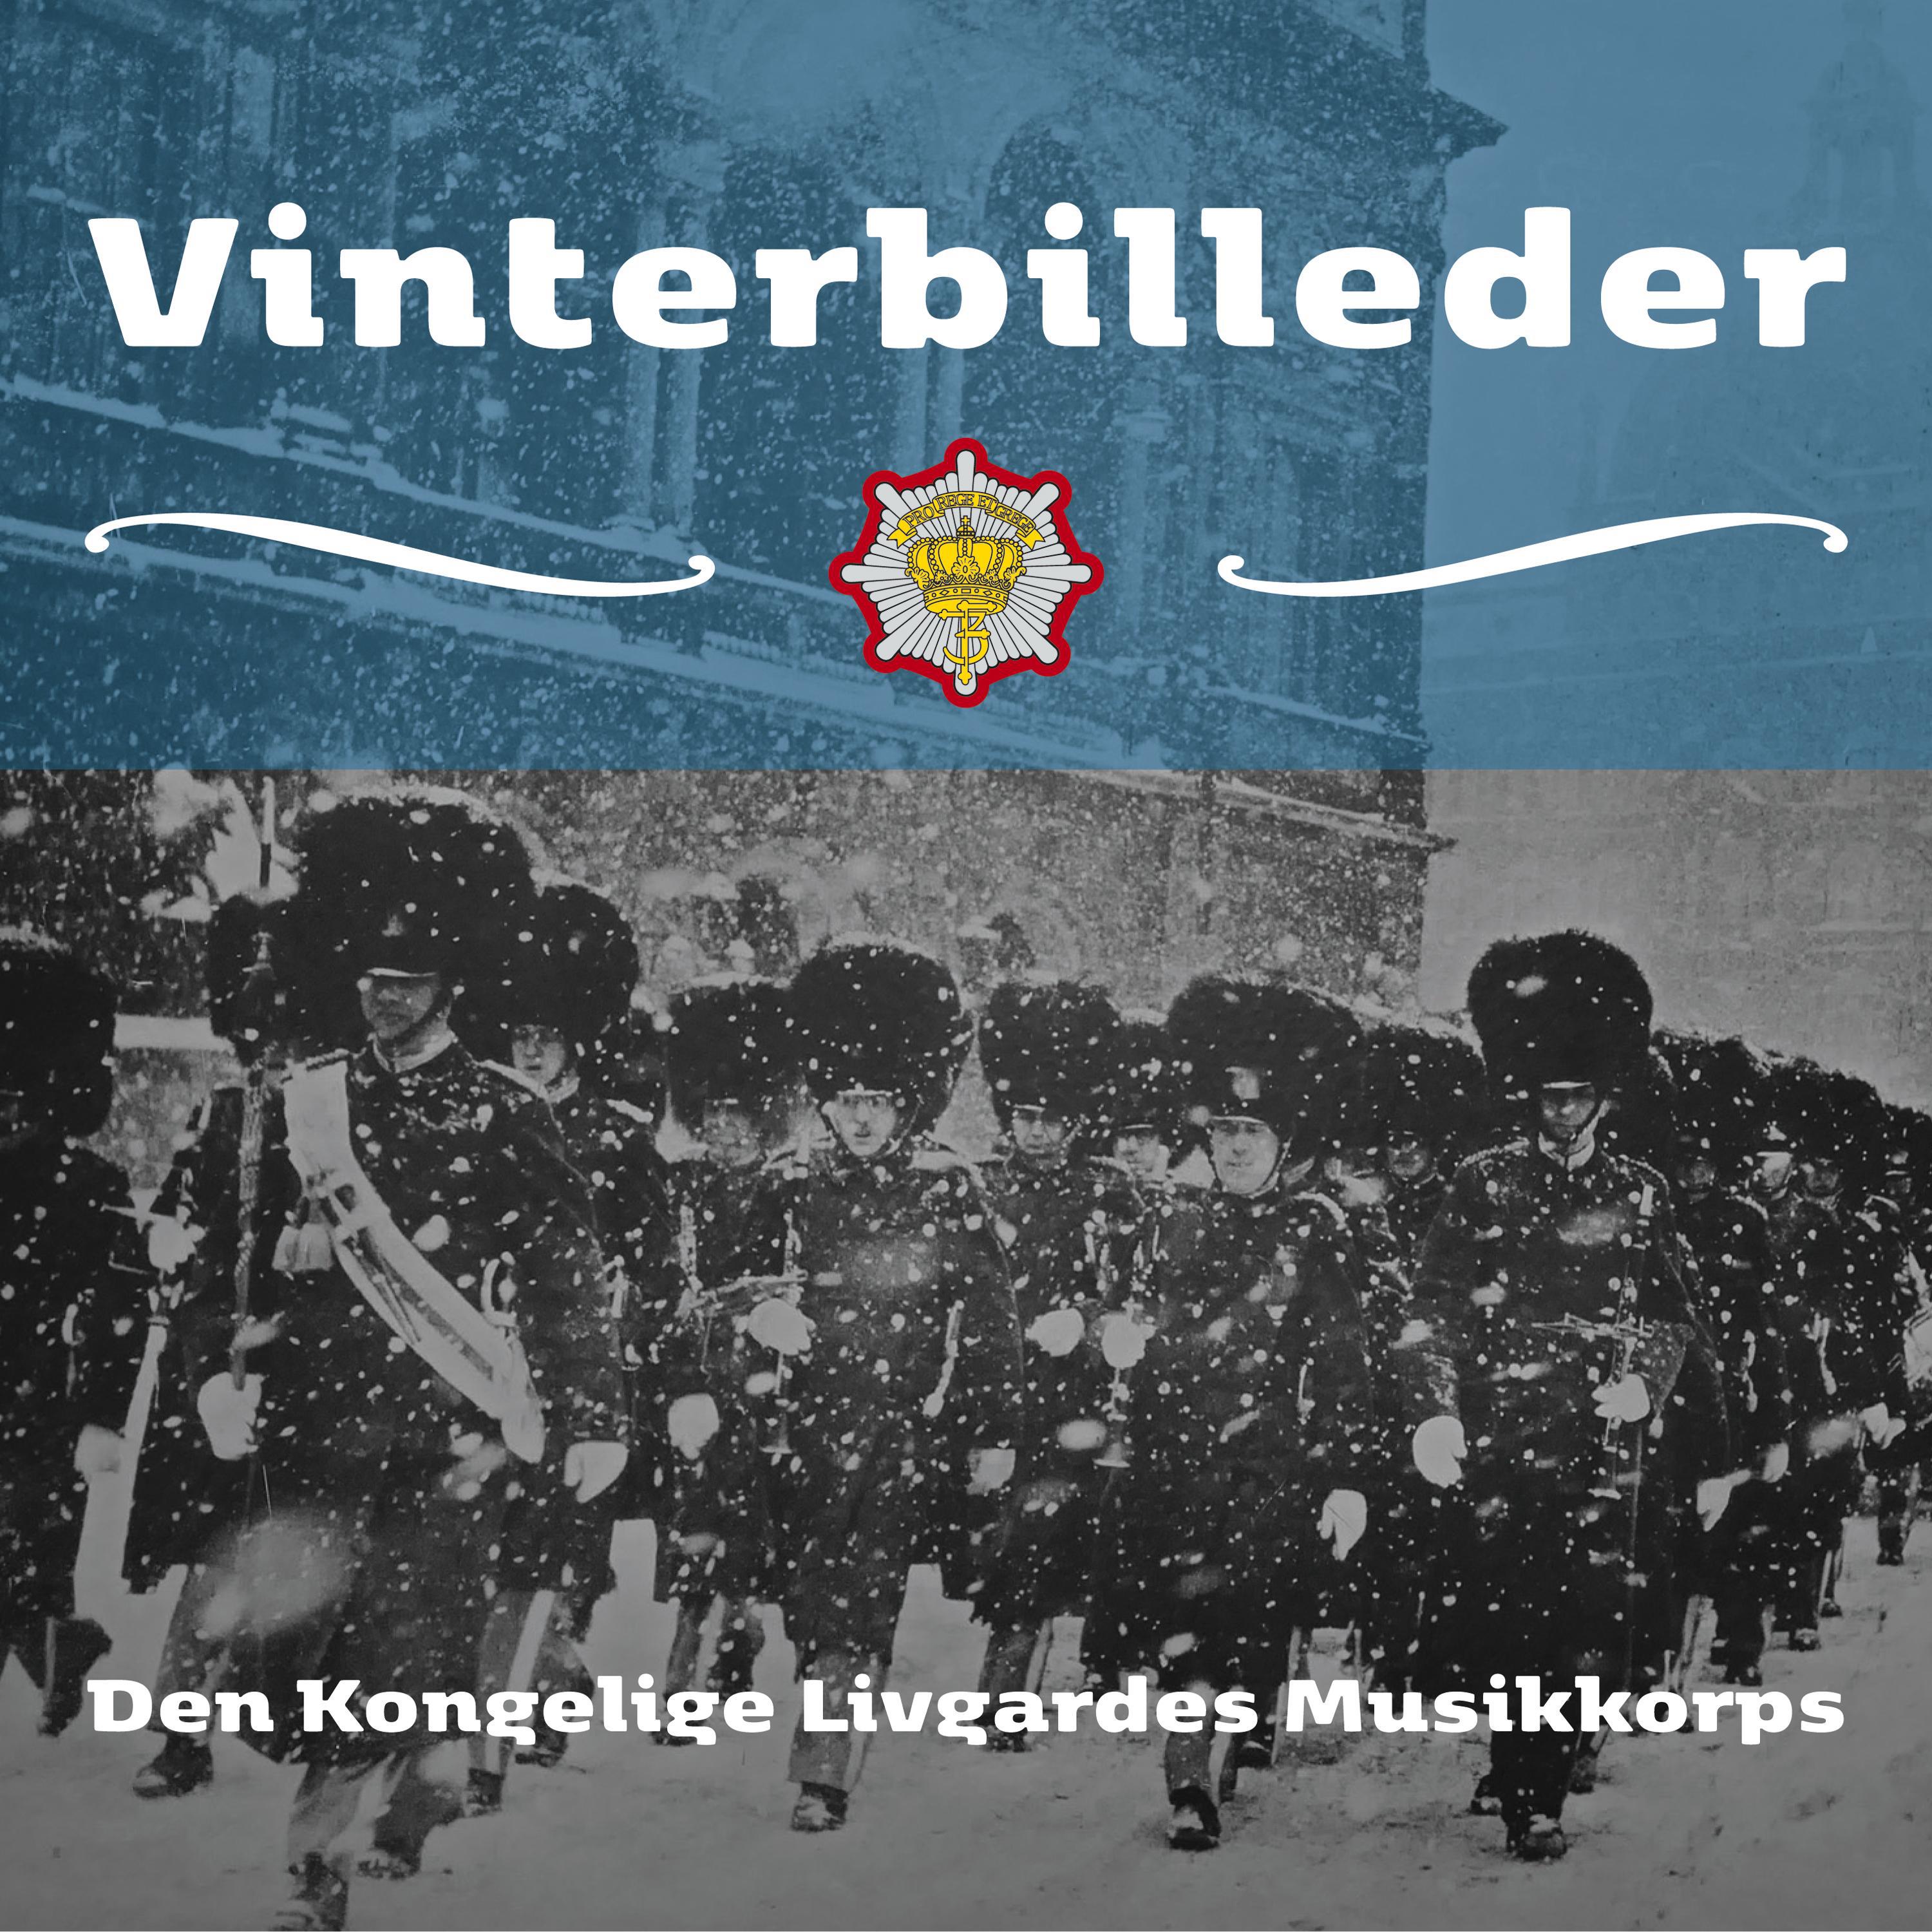 Det Kongelige Danske Musikkonservatorium Børnekor - December March